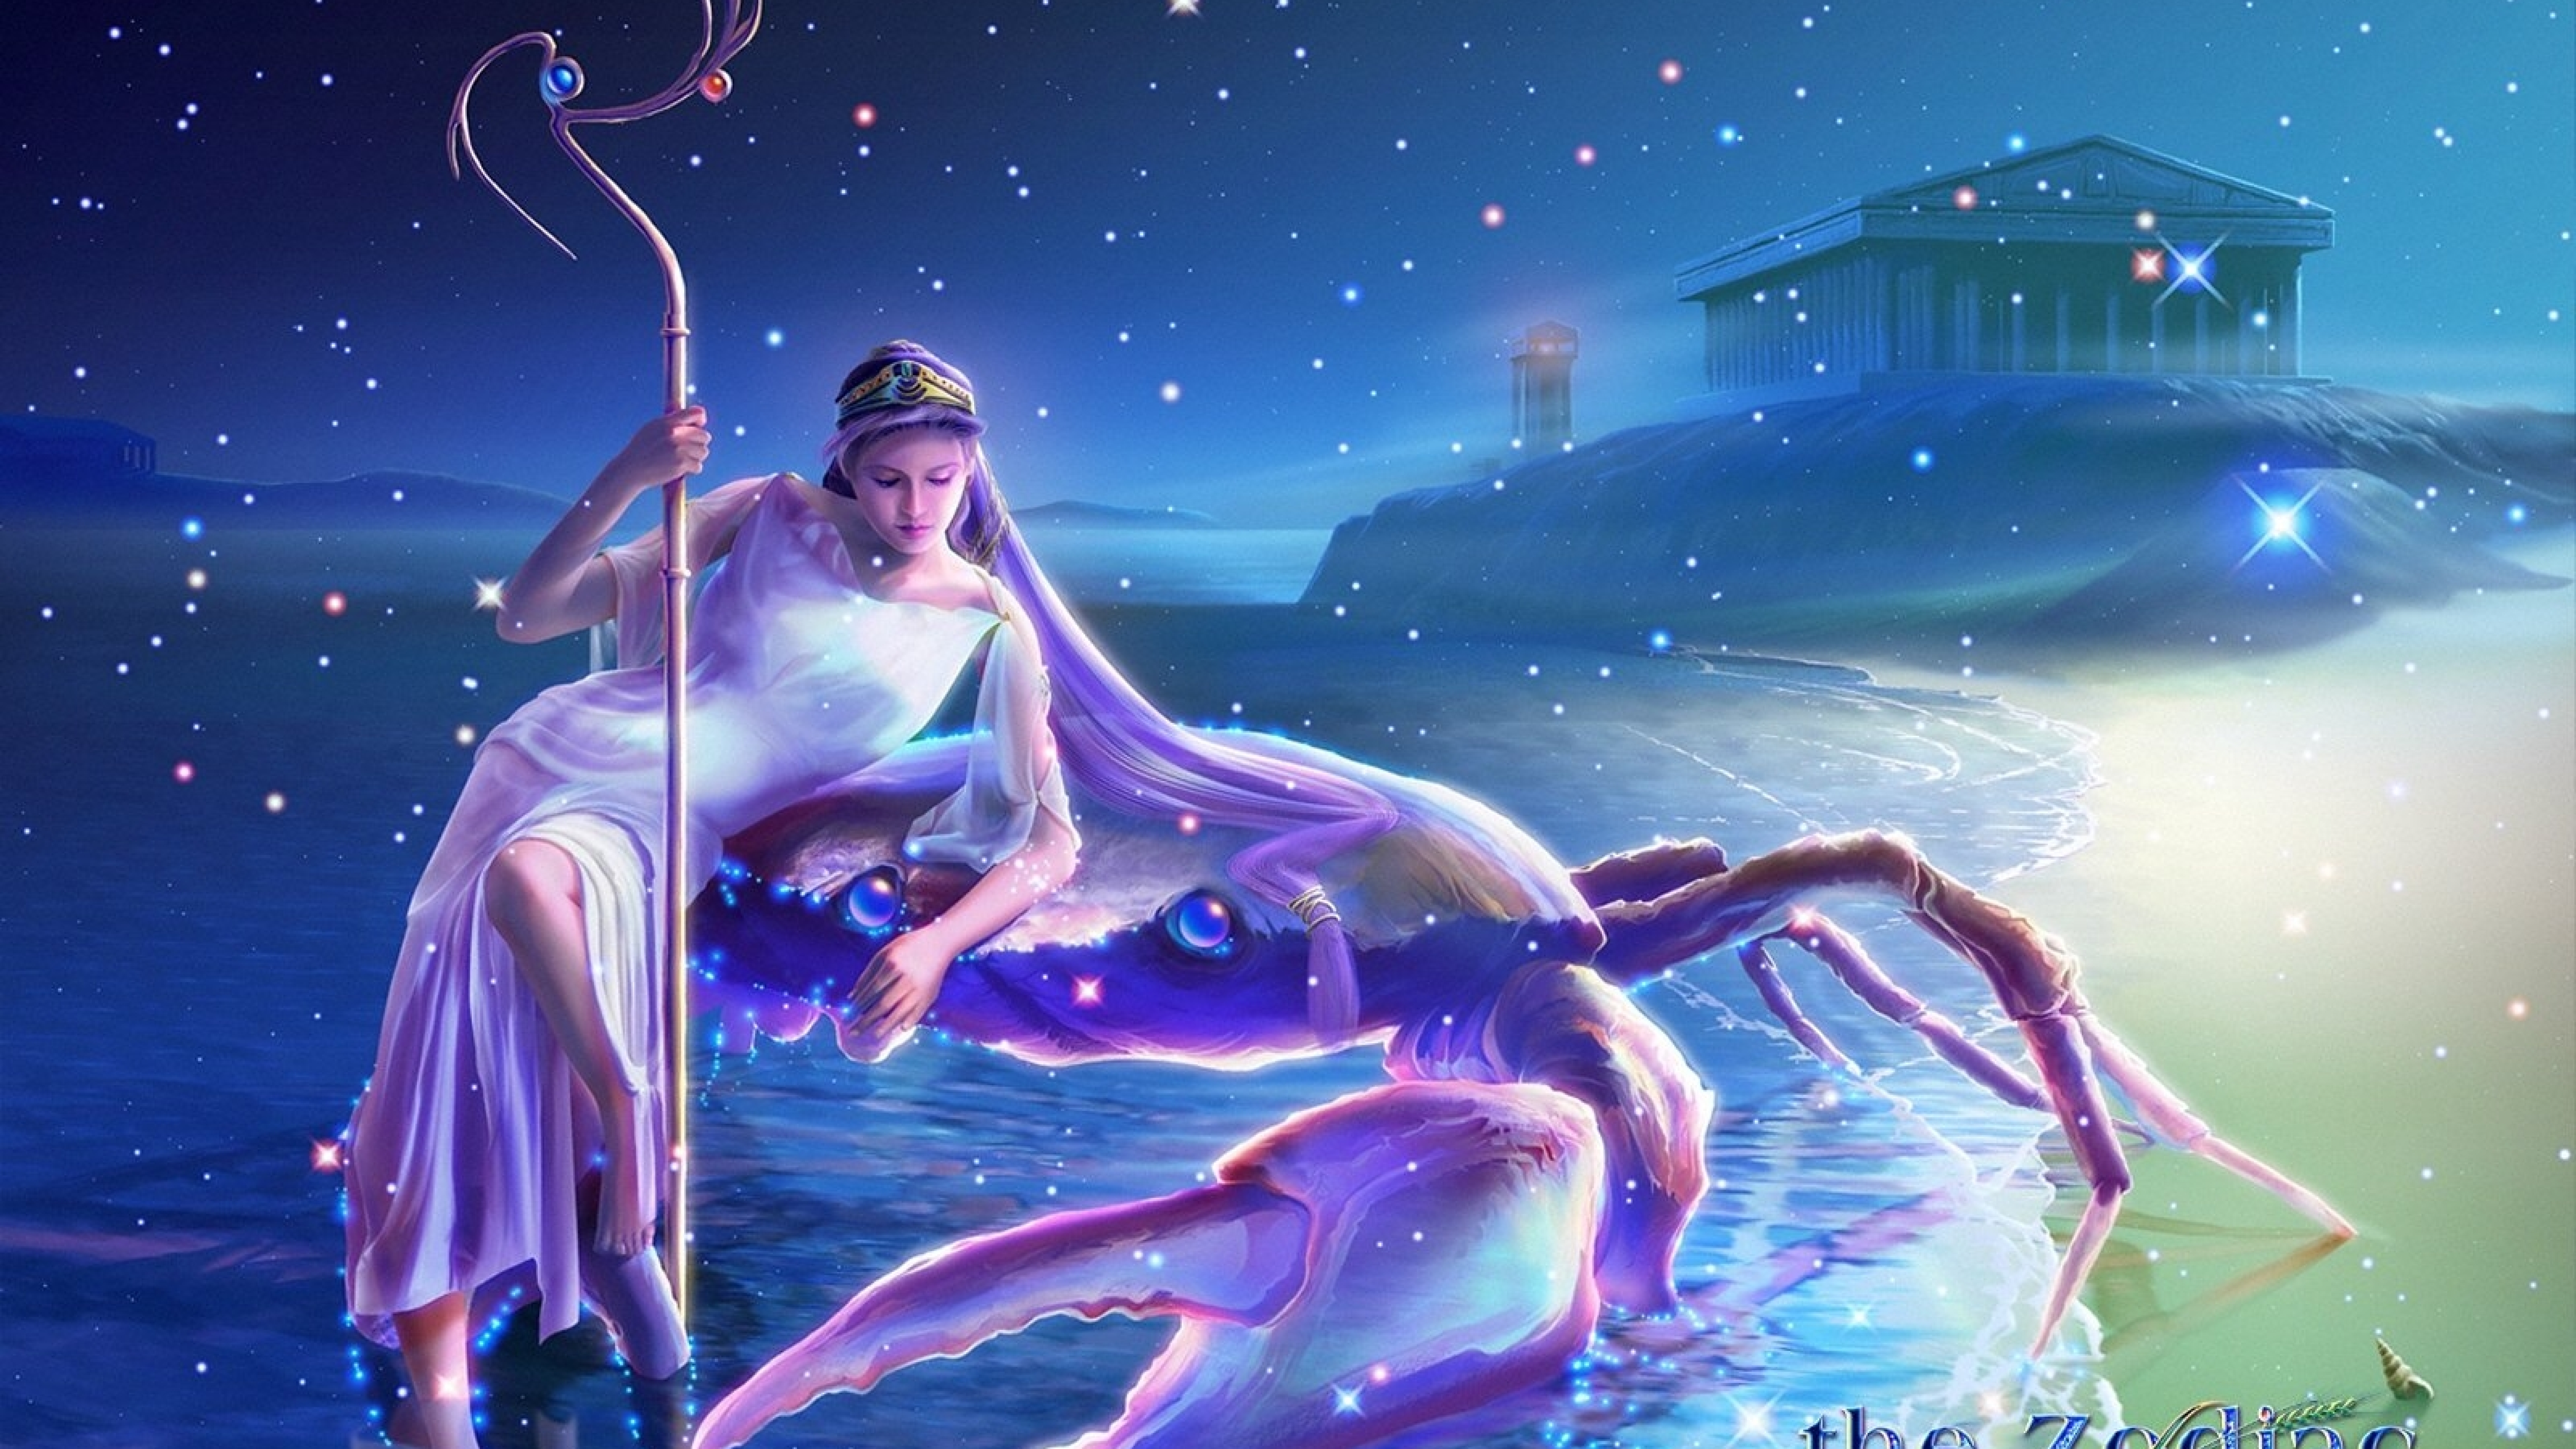 Астрологический прогноз на сегодня рыбы. Ютака Кагая картины. Кагайя Ютака-Дева. Звездная богиня Астерия. Ютаки Кагайя Козерог.